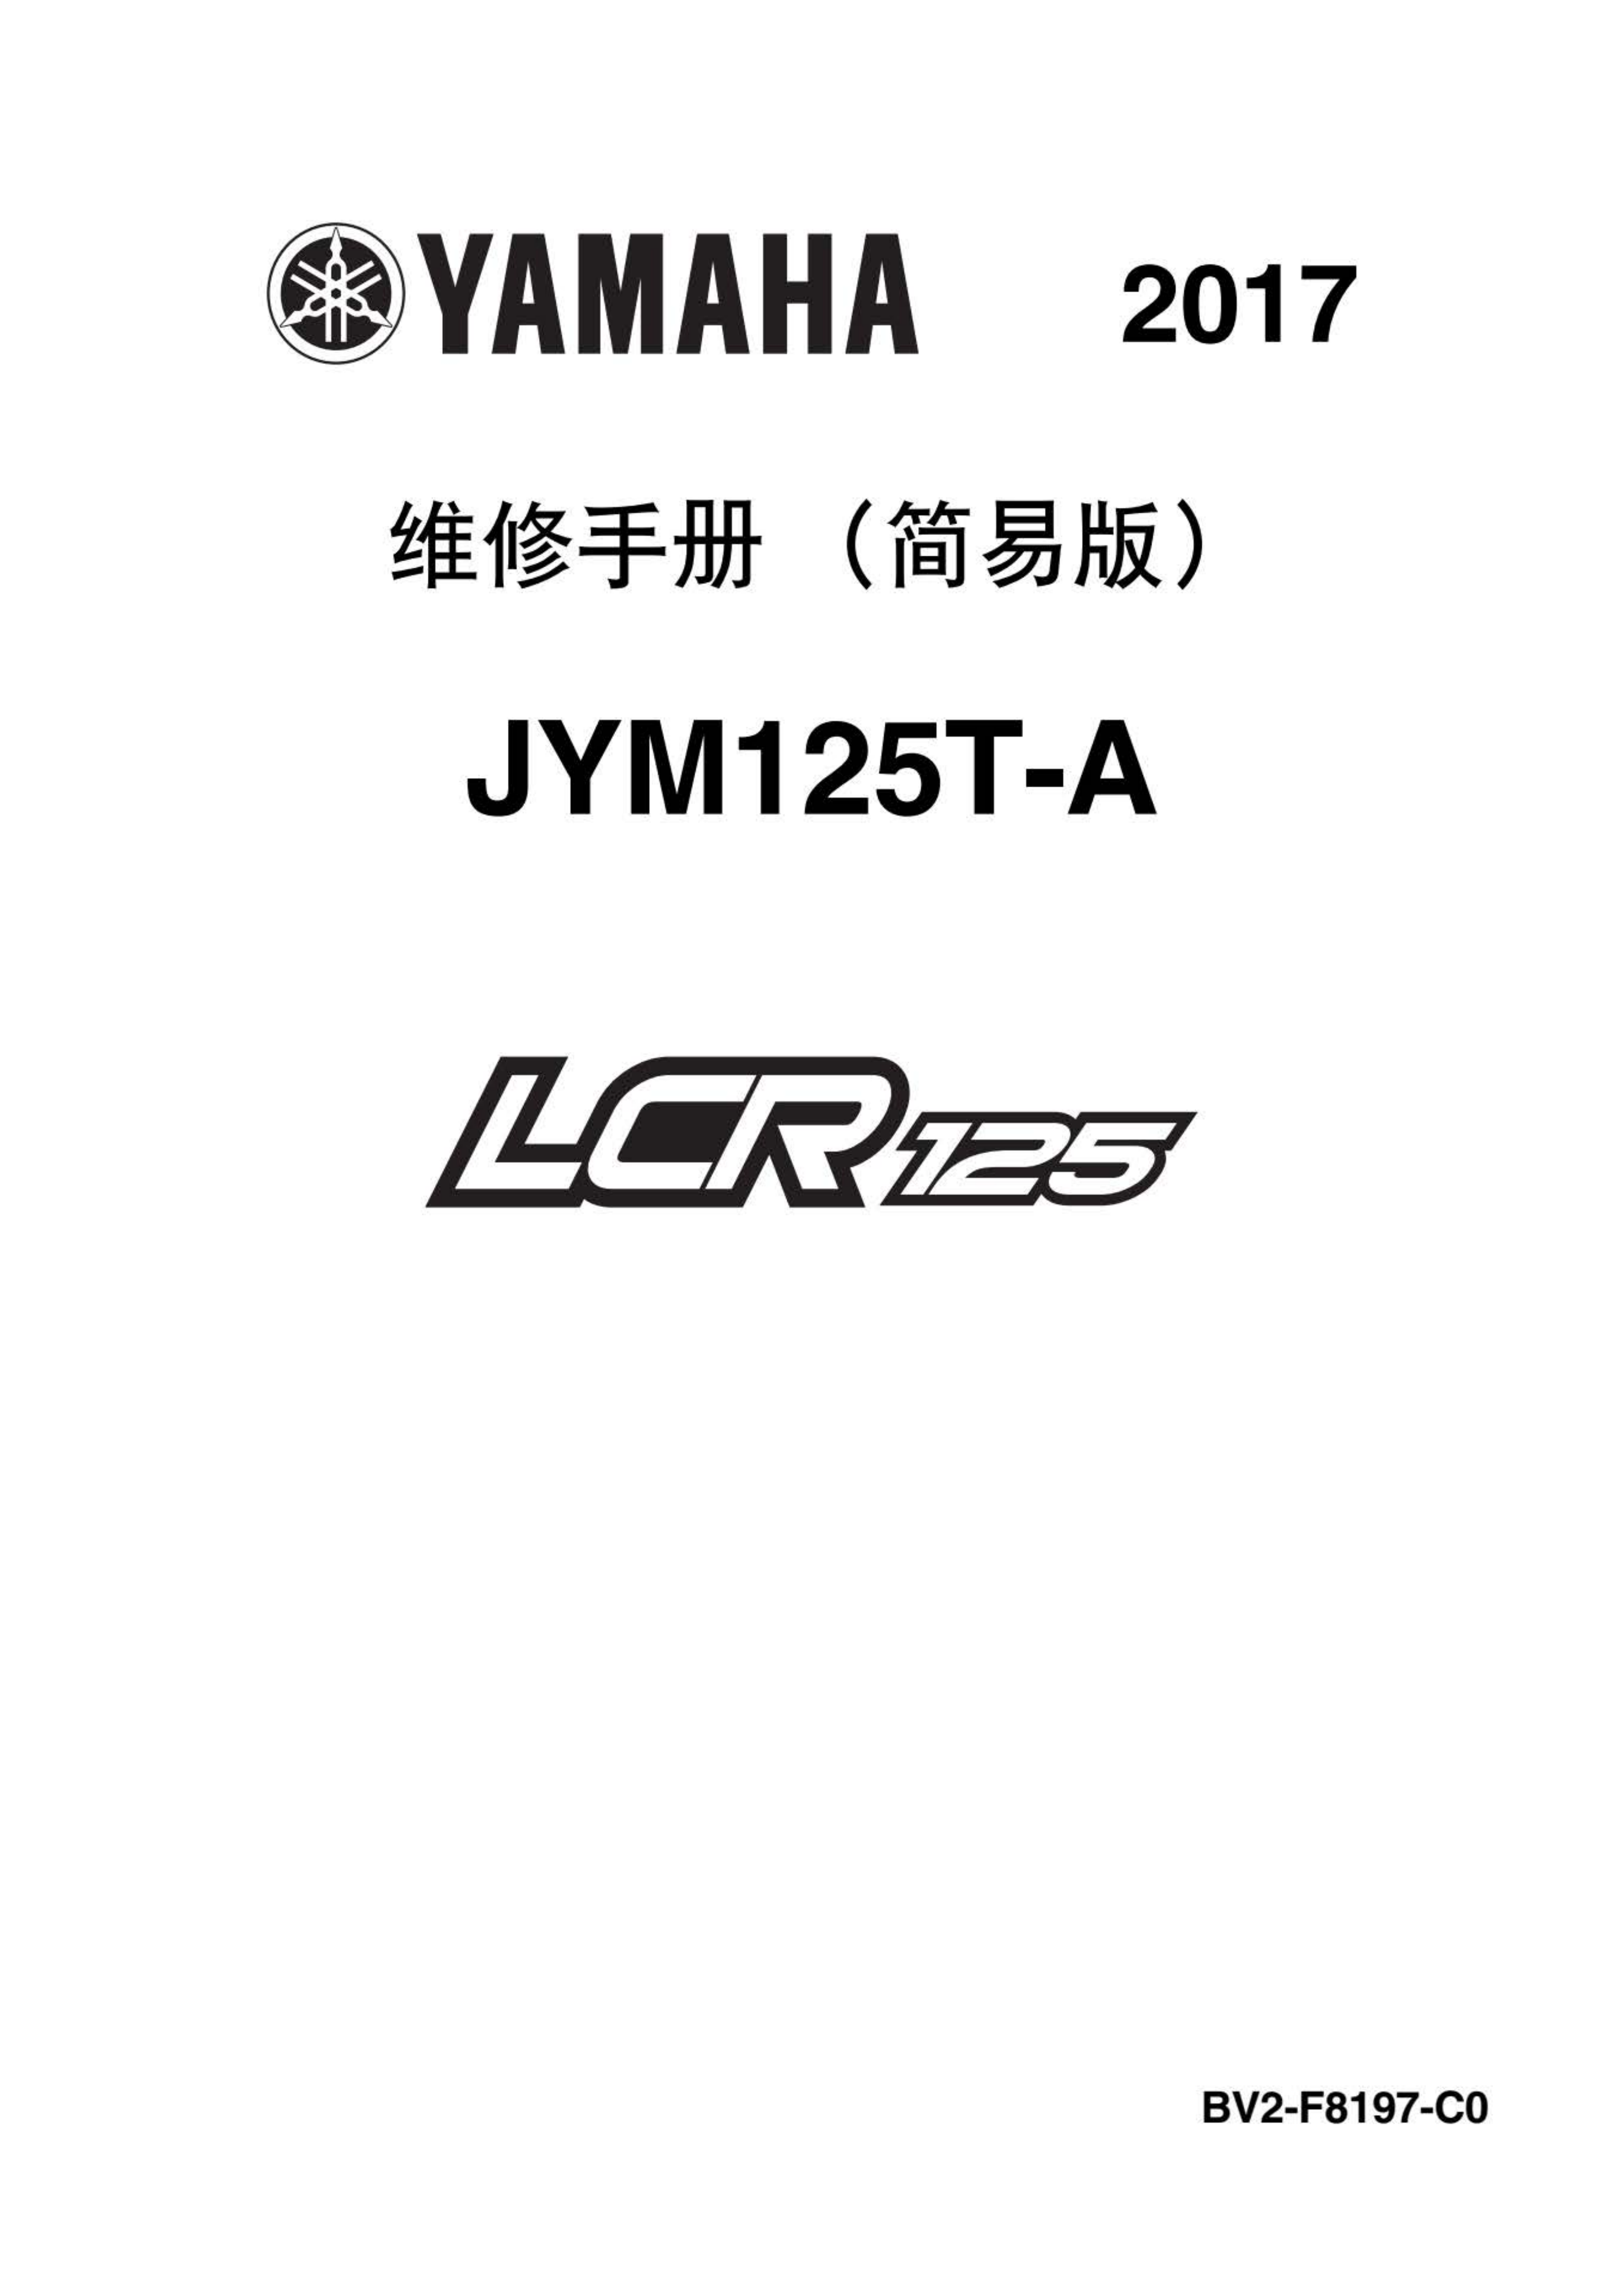 原版中文2017年雅马哈LCR125维修手册简易版JYM125T-A插图